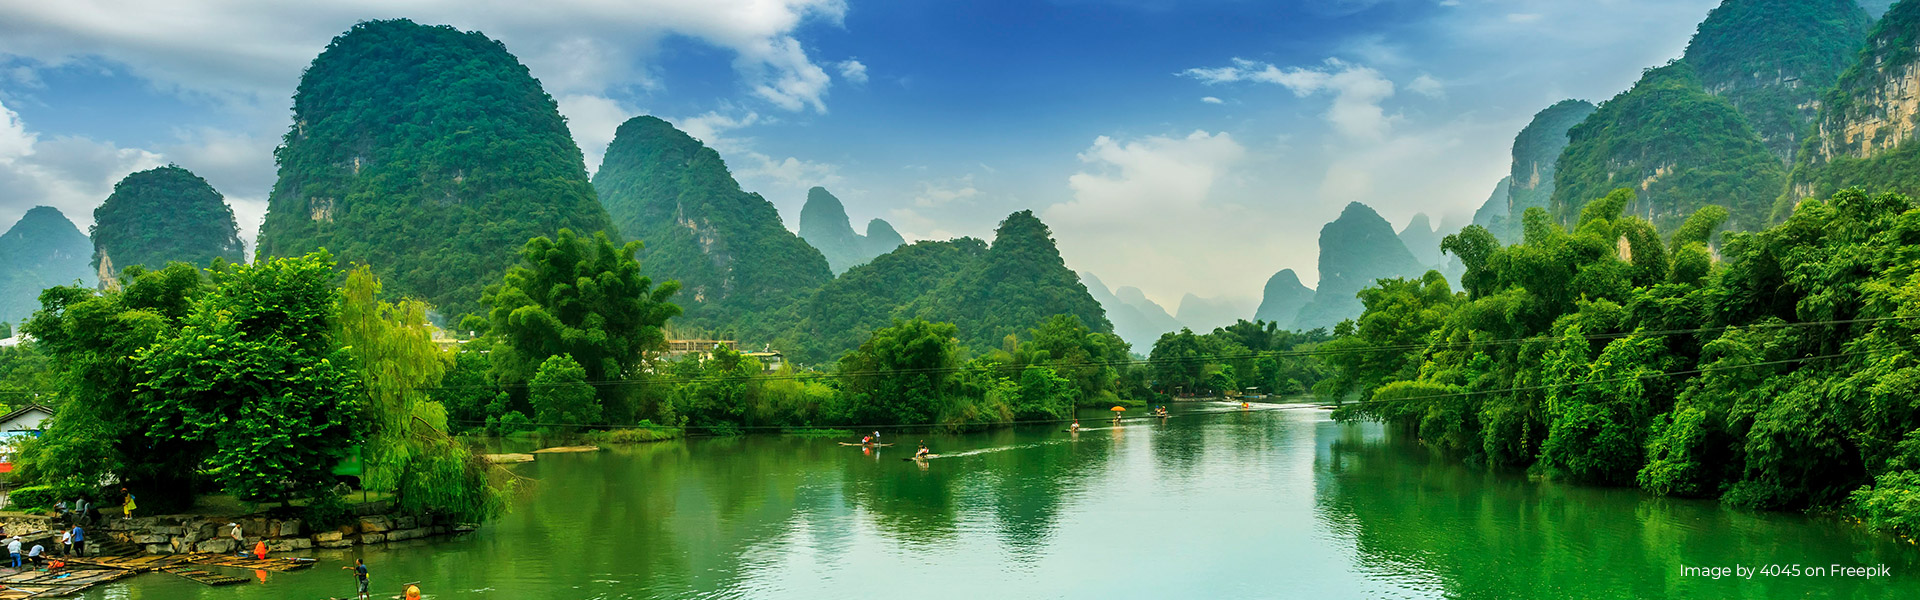 Thiên Xuân Travel, Live your travel dreams